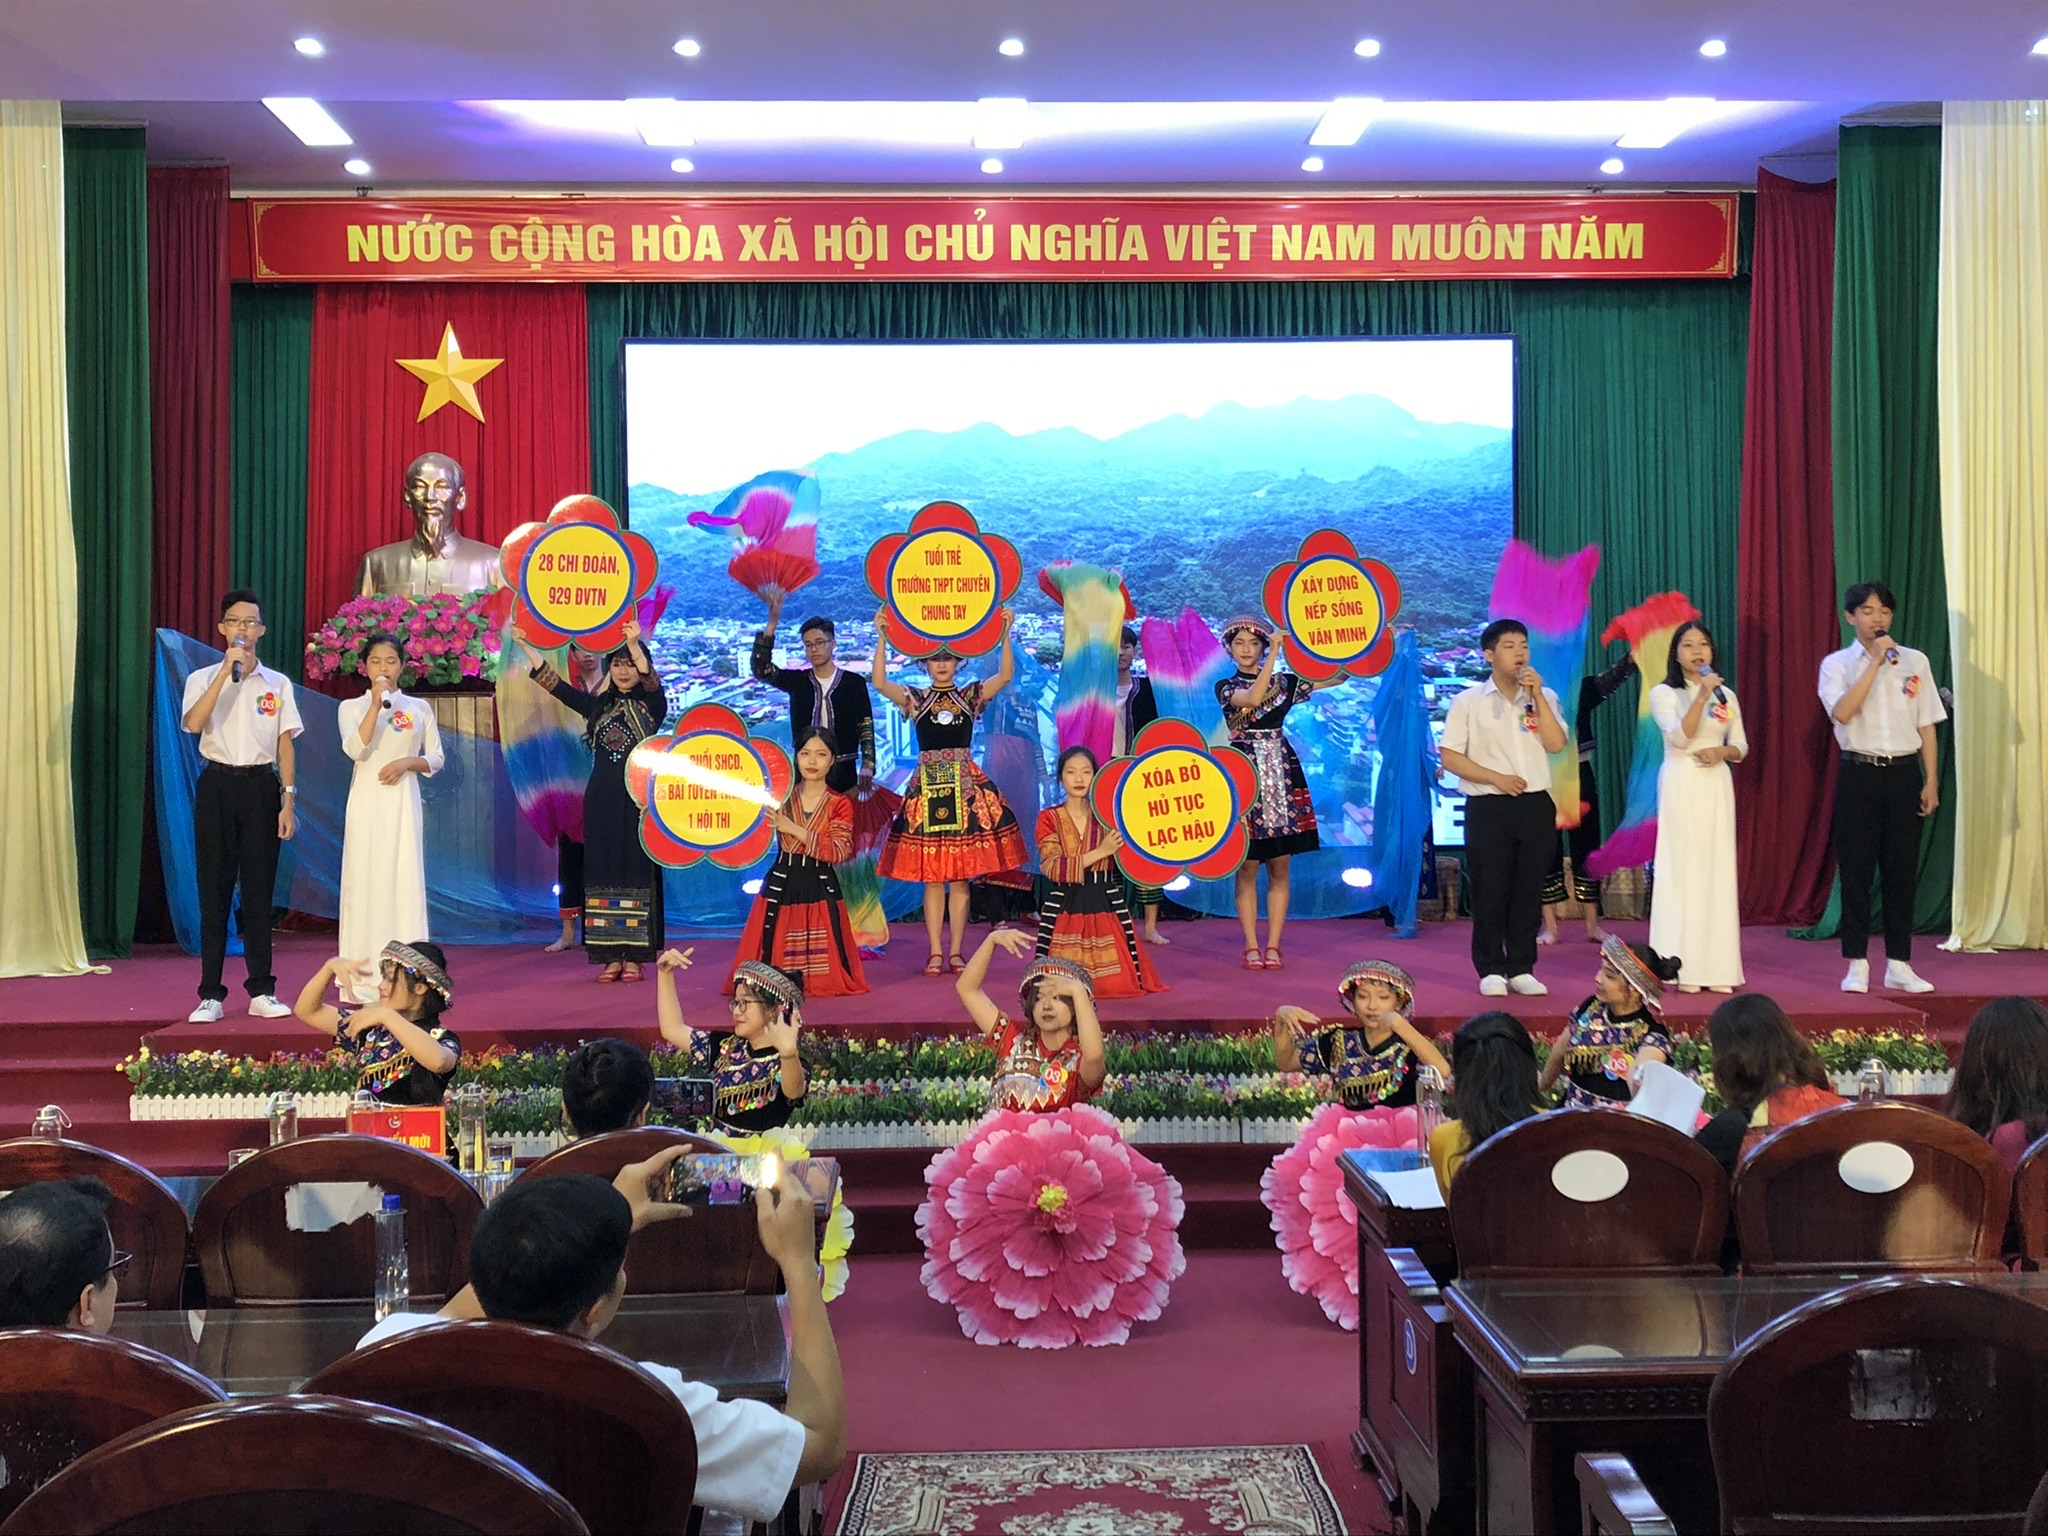 Phát động phong trào “Thi đua xóa bỏ hủ tục lạc hậu, xây dựng nếp sống văn minh trong nhân dân các dân tộc trên địa bàn thành phố Hà Giang” giai đoạn 2022-2025